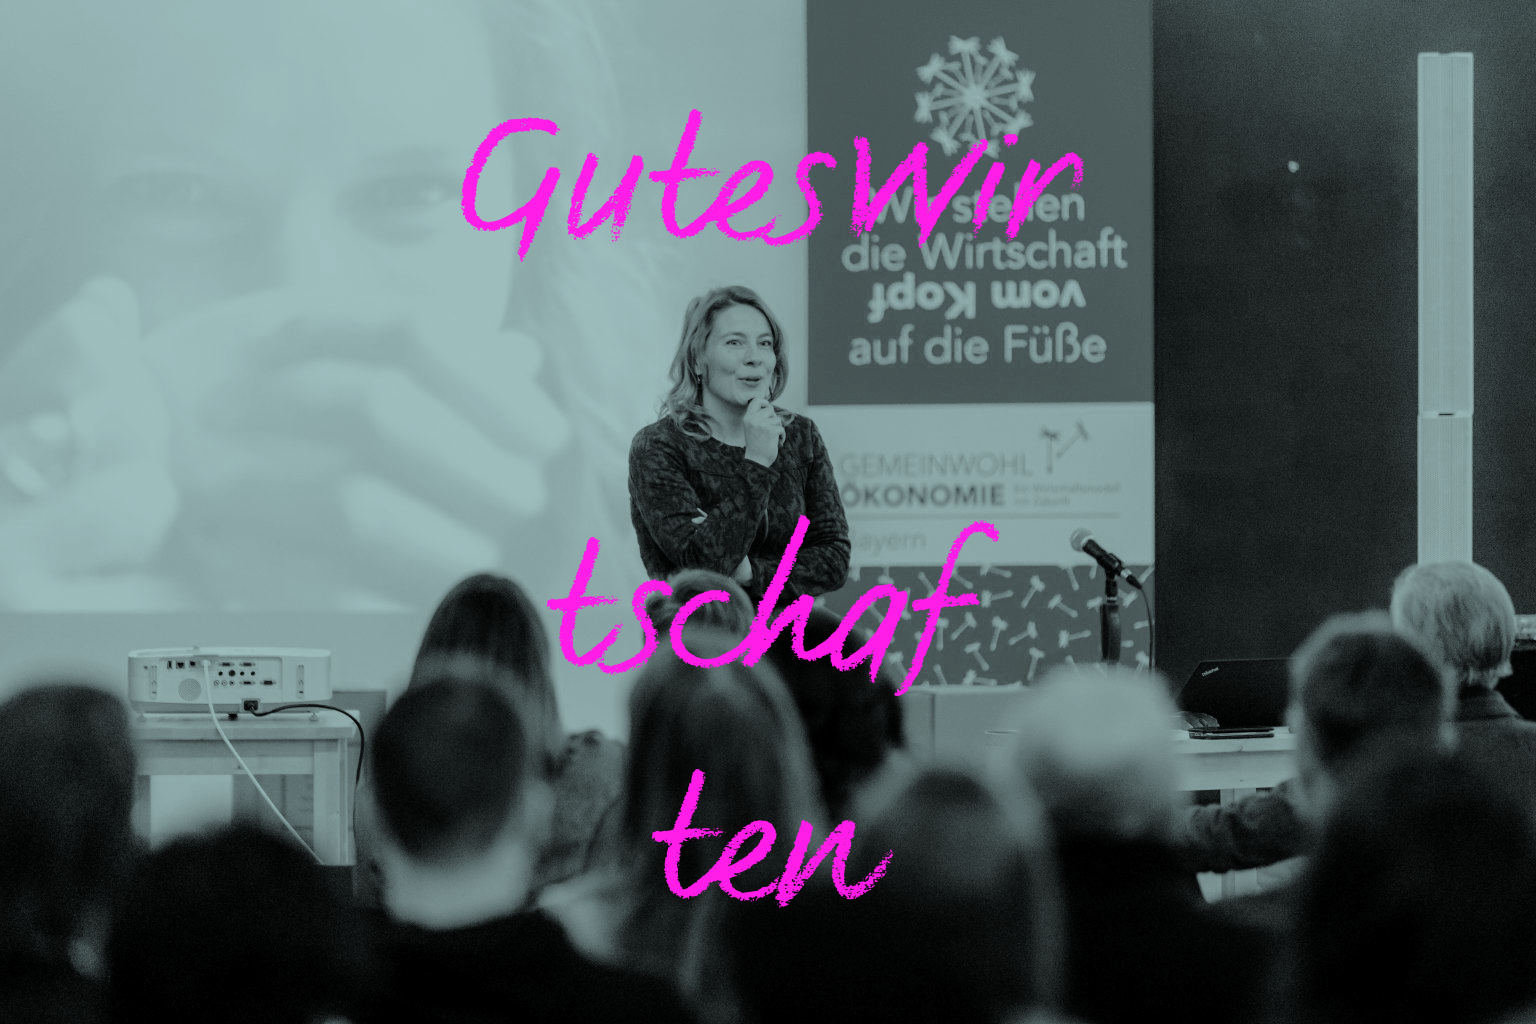 Tina Teucher bei GWÖ Bayern e.V., Thema Gemeinwohlökonomie; Text auf Bild: GutesWir tschaf ten